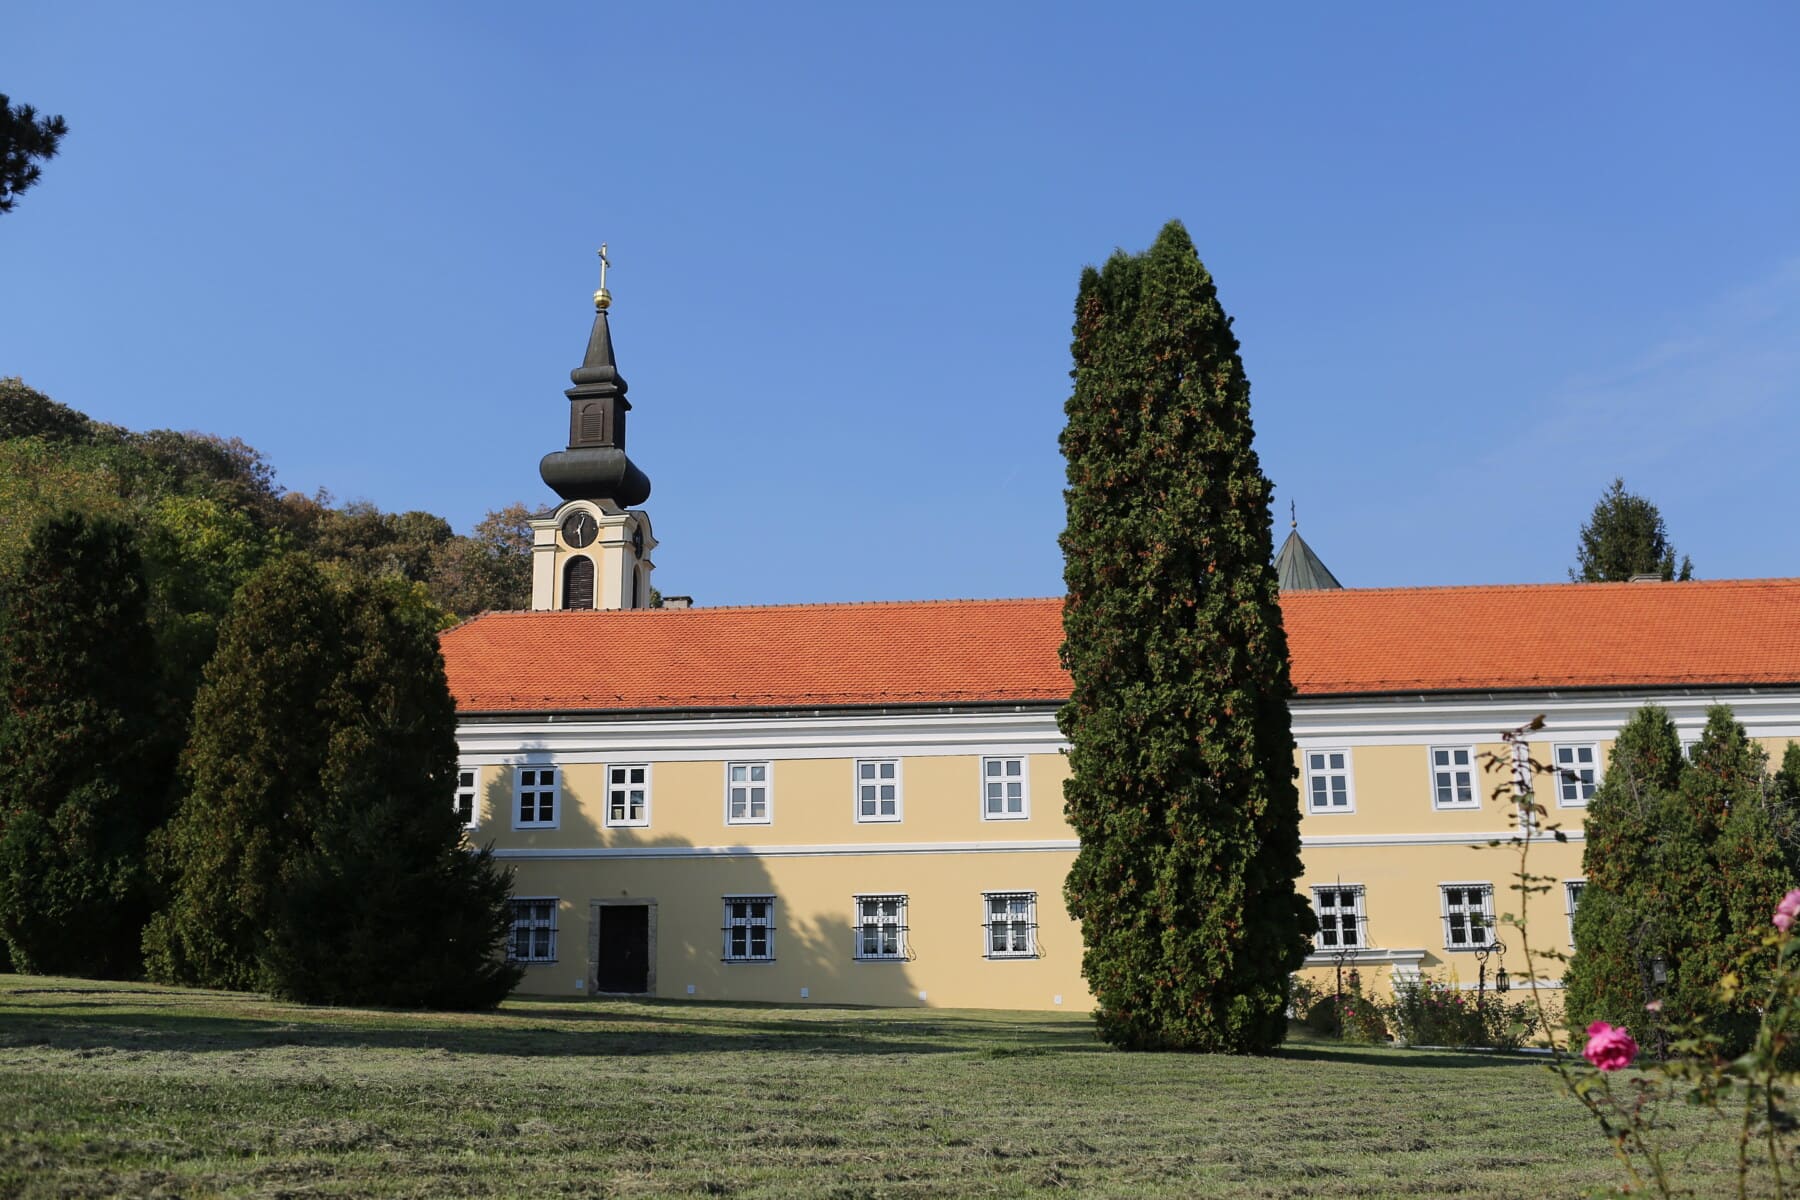 orthodoxe, Kloster, Blumengarten, Hinterhof, Rasen, Kirchturm, architektonischen Stil, Architektur, Gebäude